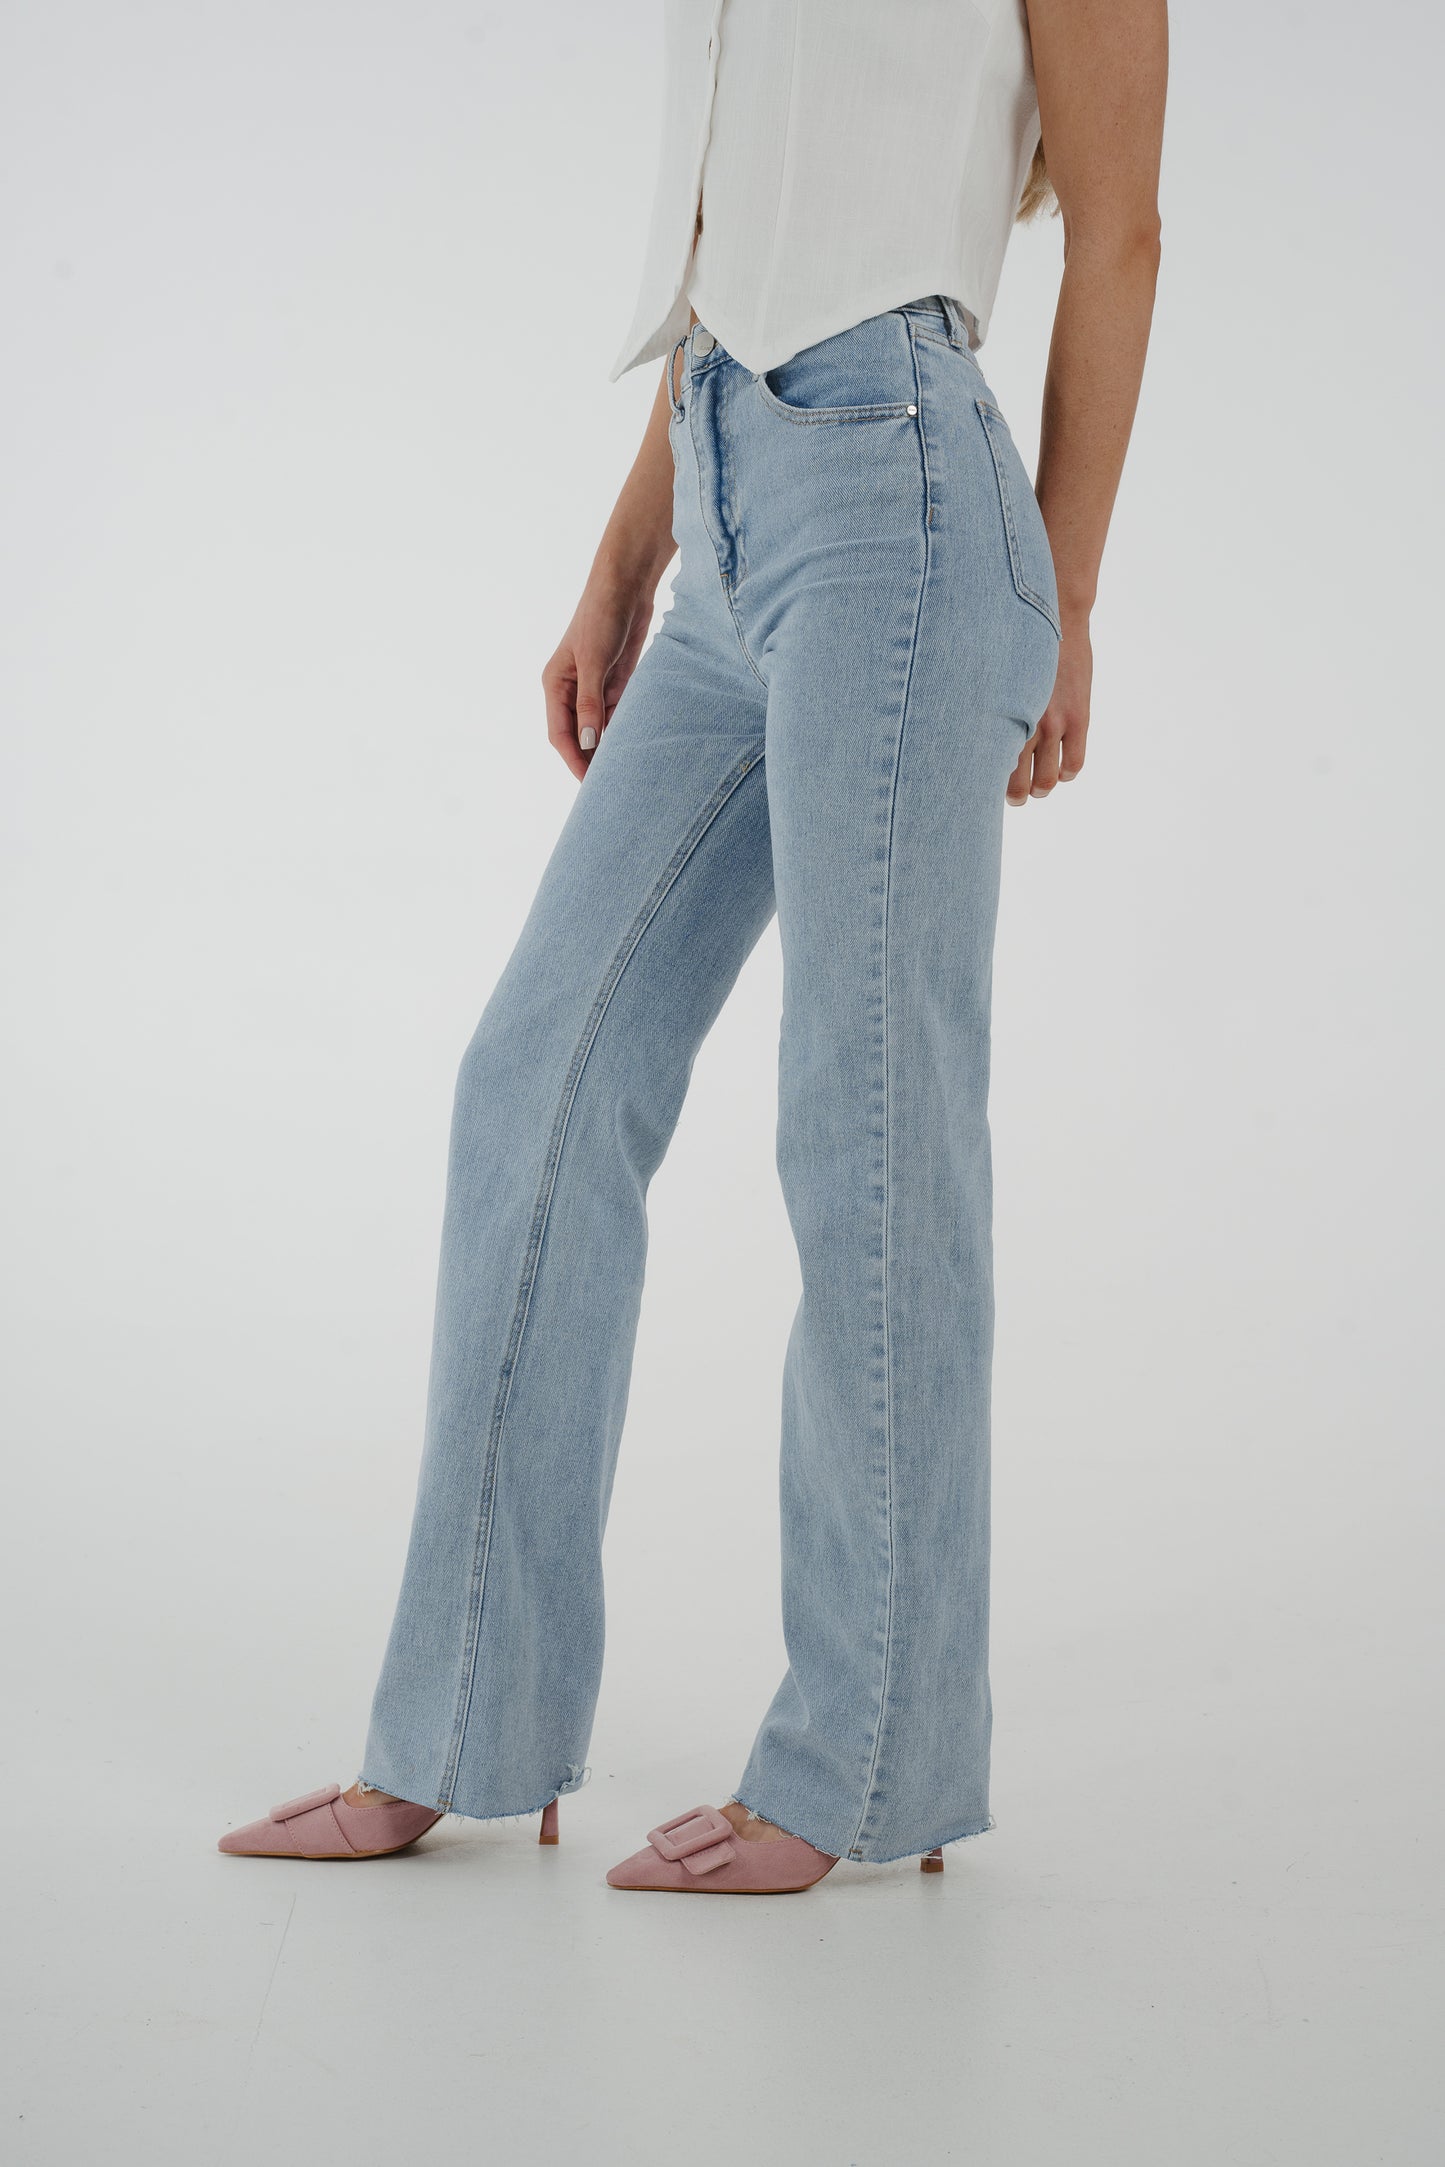 Lynne Long Length Jeans In Light Wash